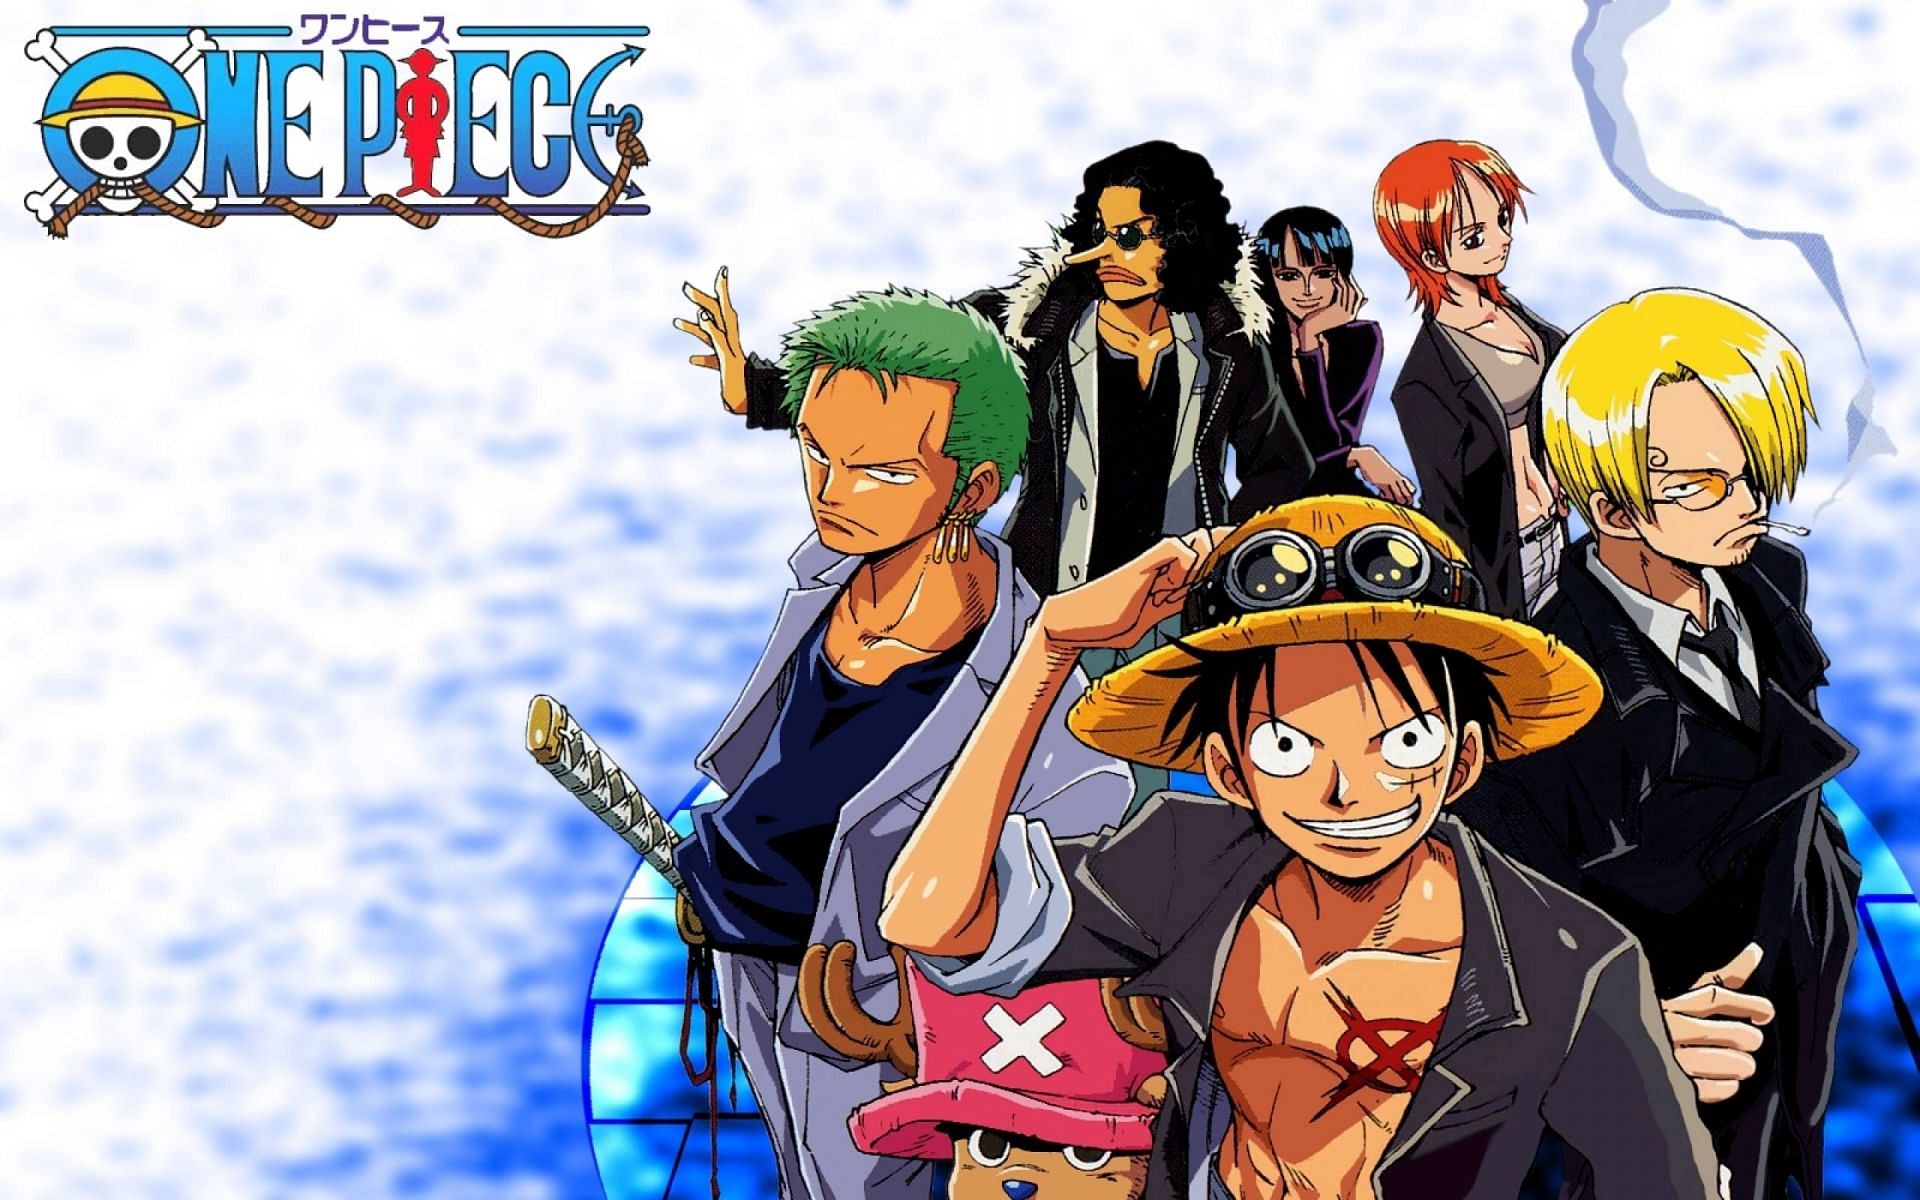 One Piece X - One Piece X added a new photo.